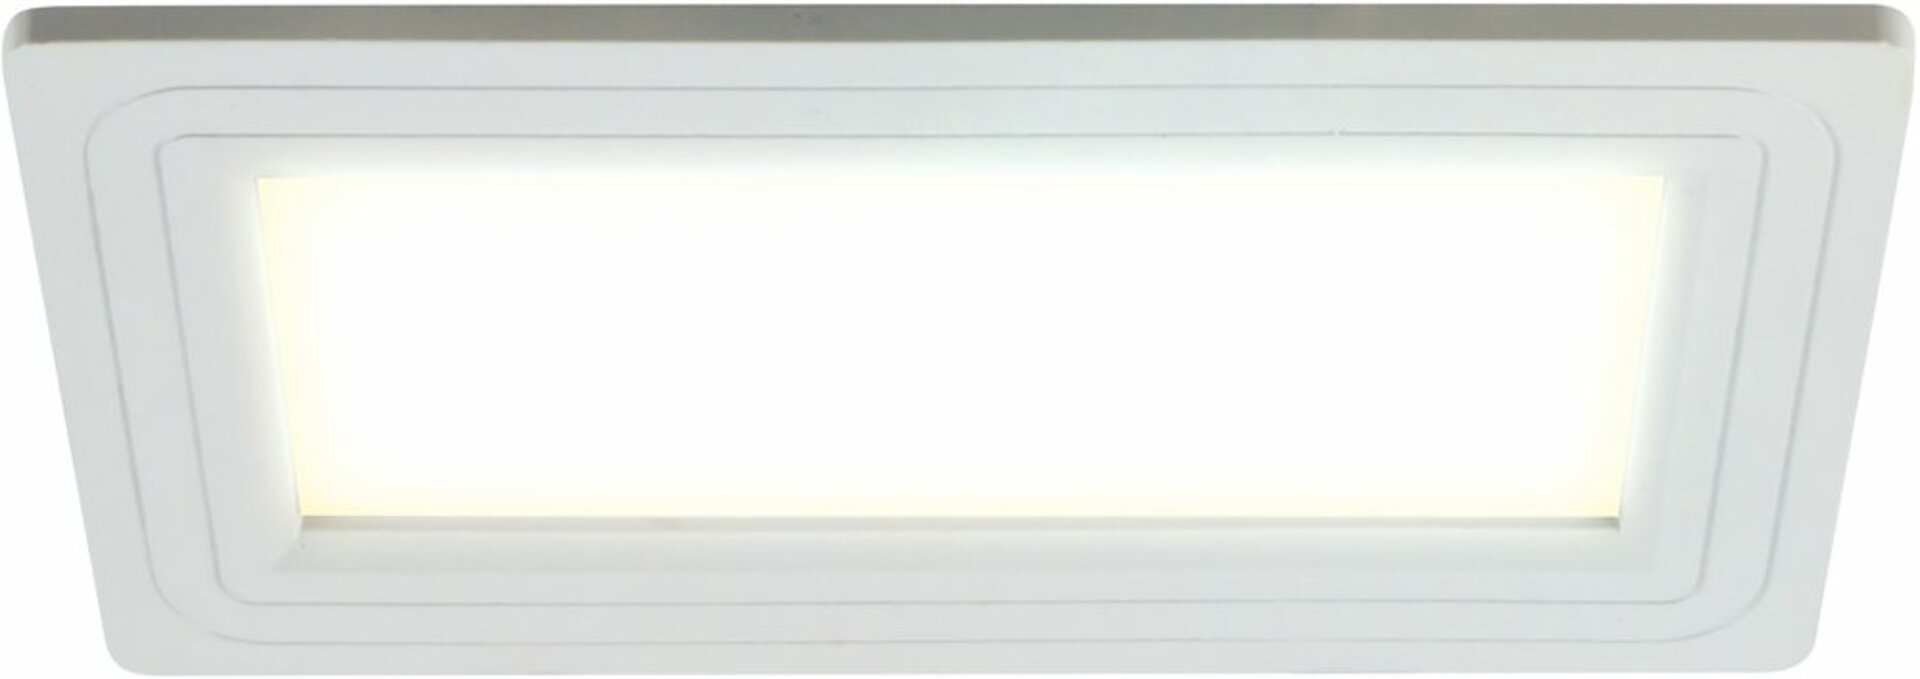 HEITRONIC LED Panel teplá bílá 27444